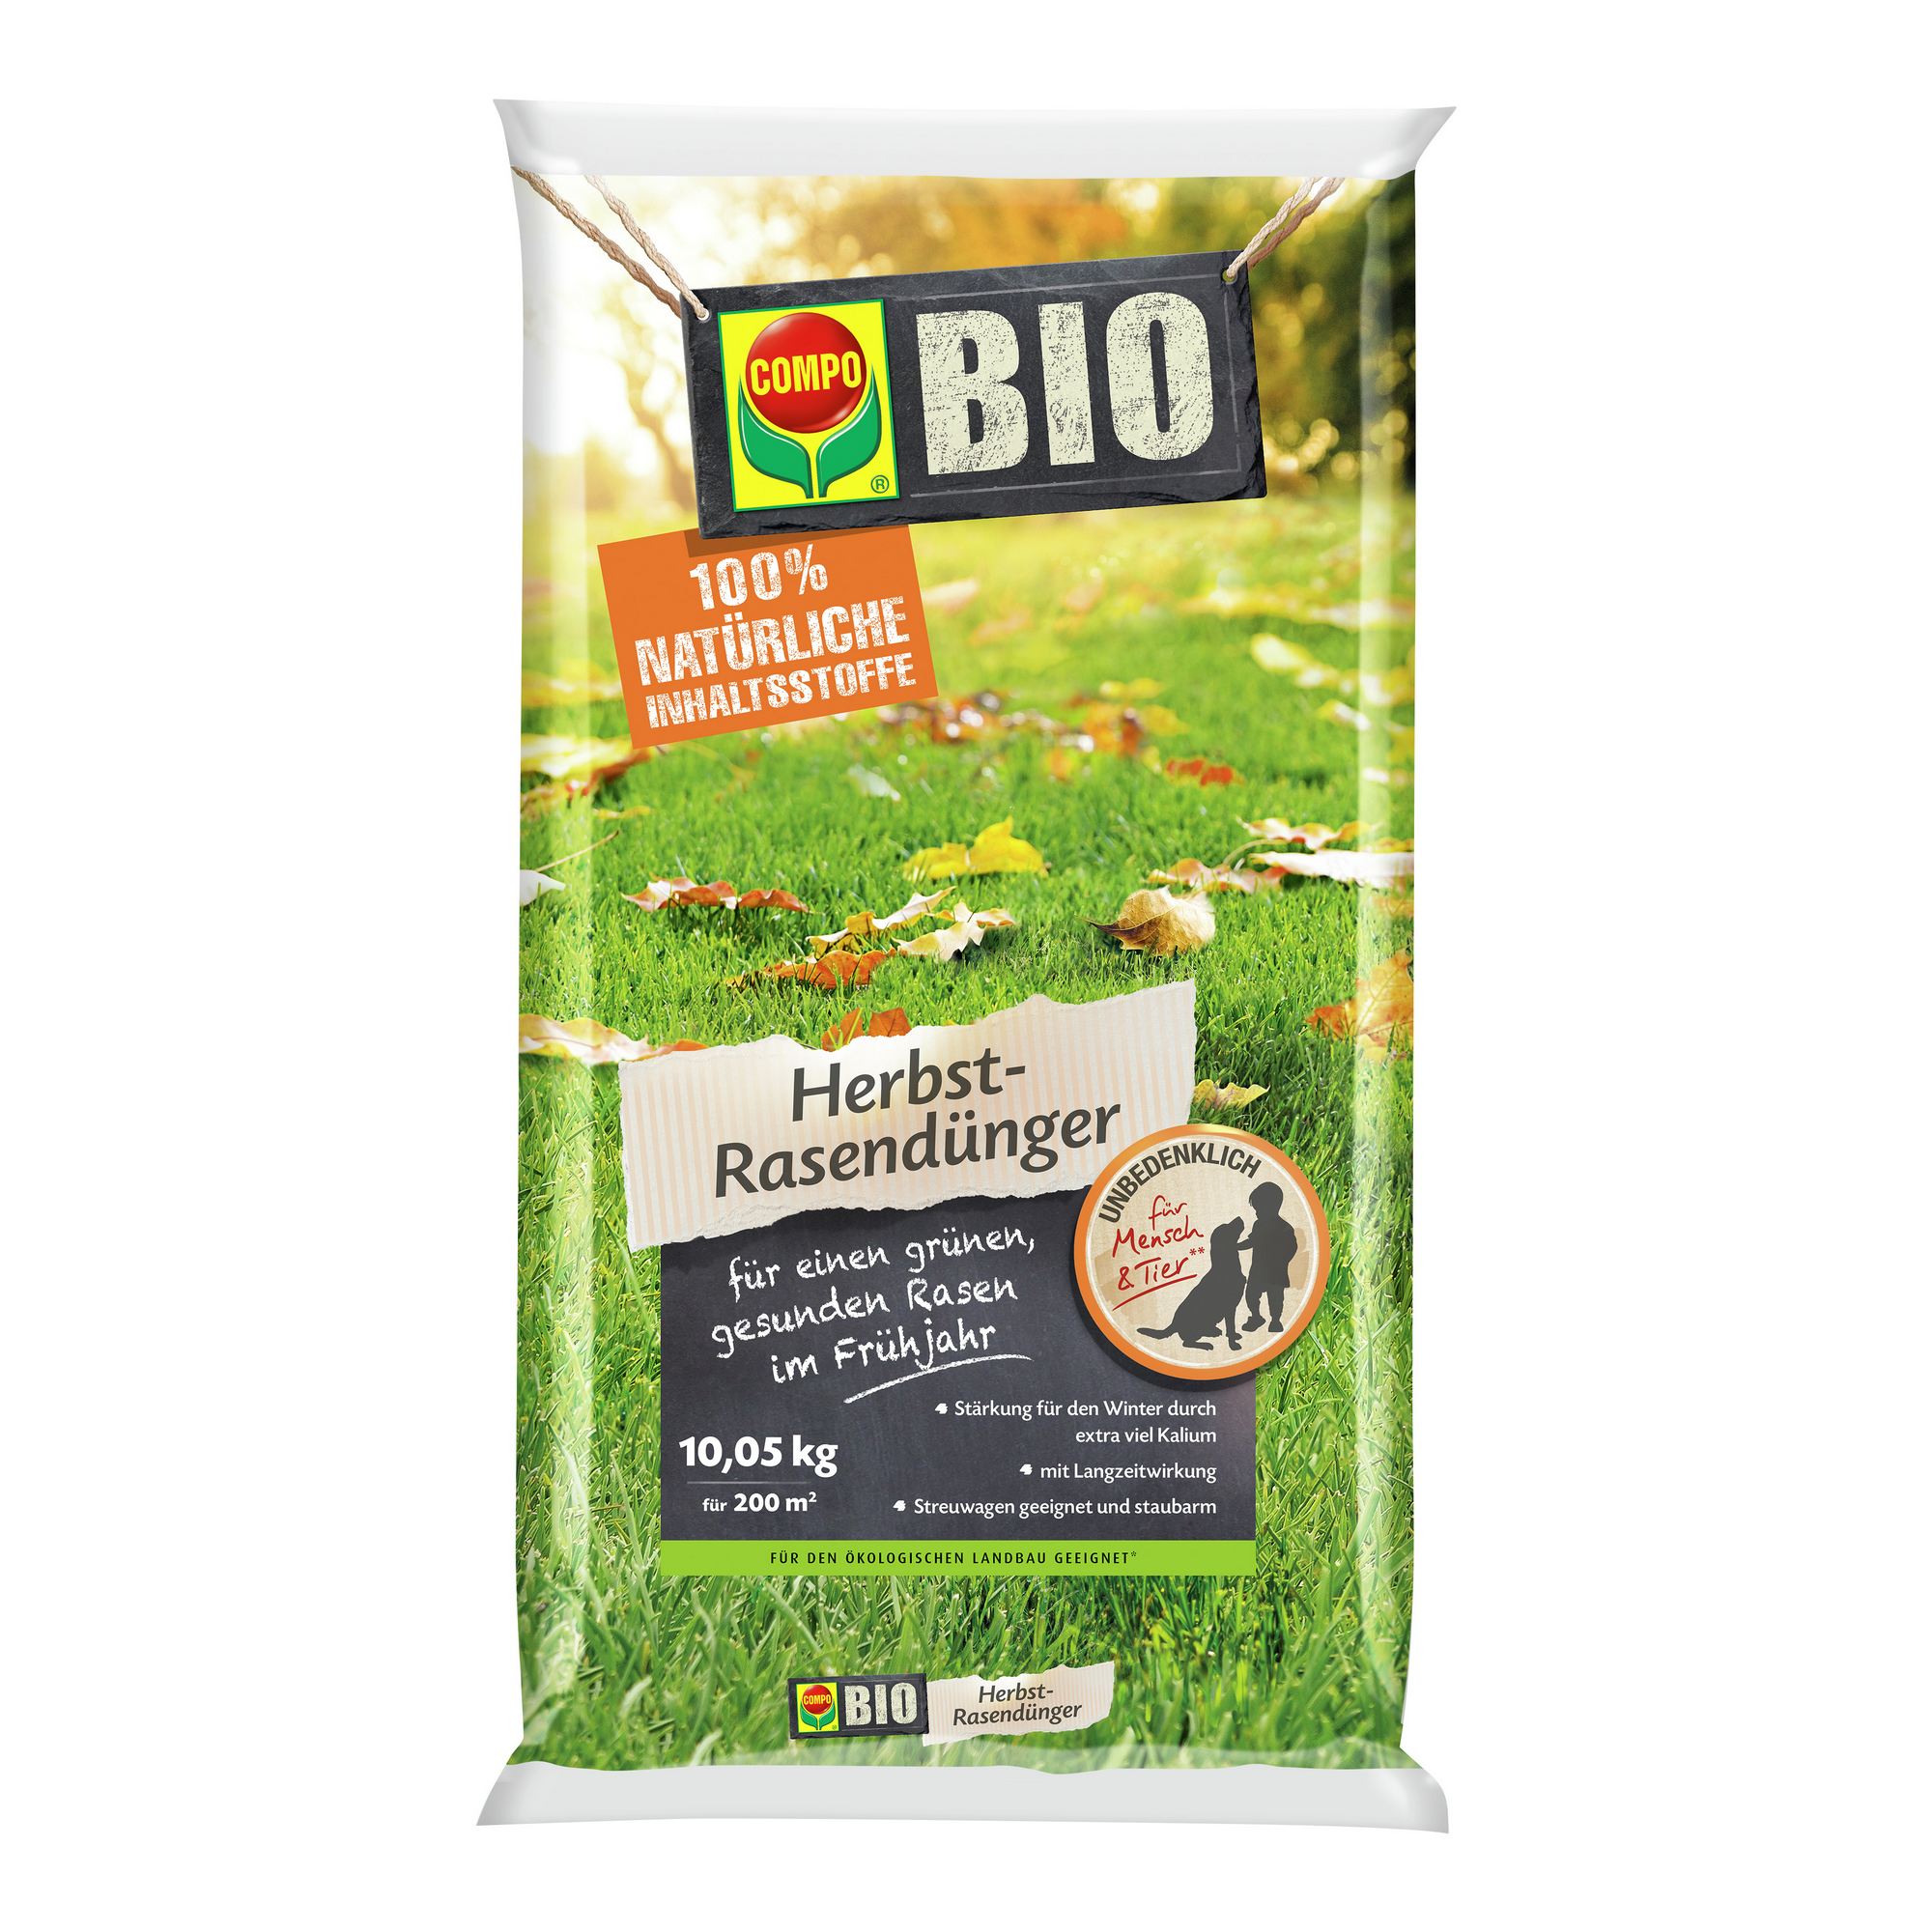 Bio Herbst-Rasendünger 10,05 kg für ca. 200 m² + product picture